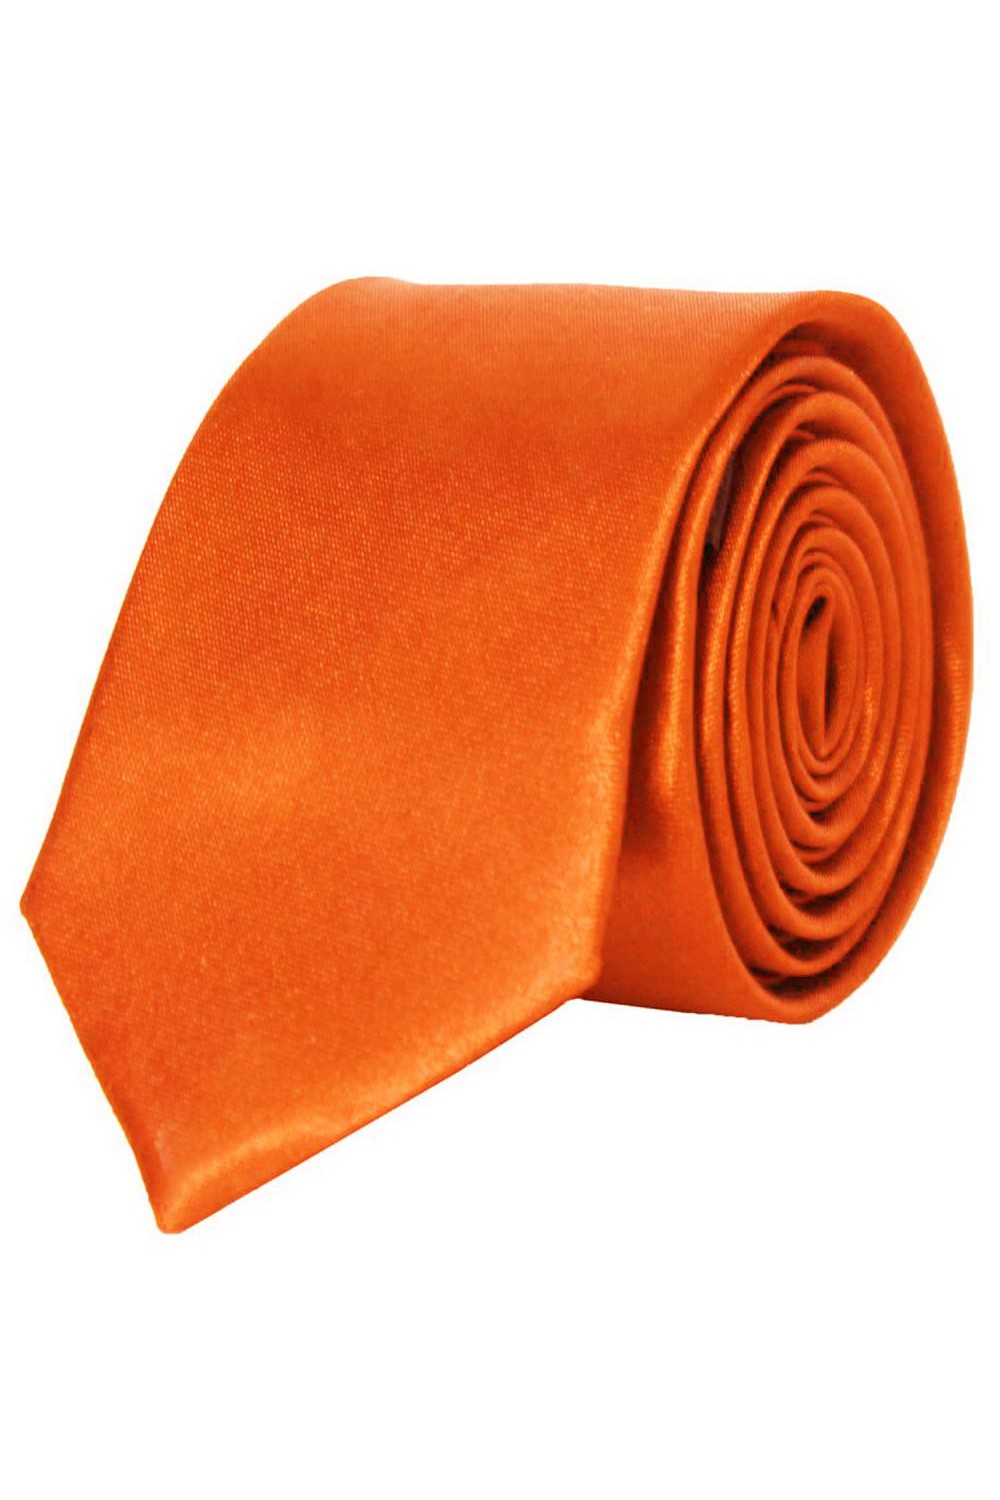 Cravate orange en Satin Slim